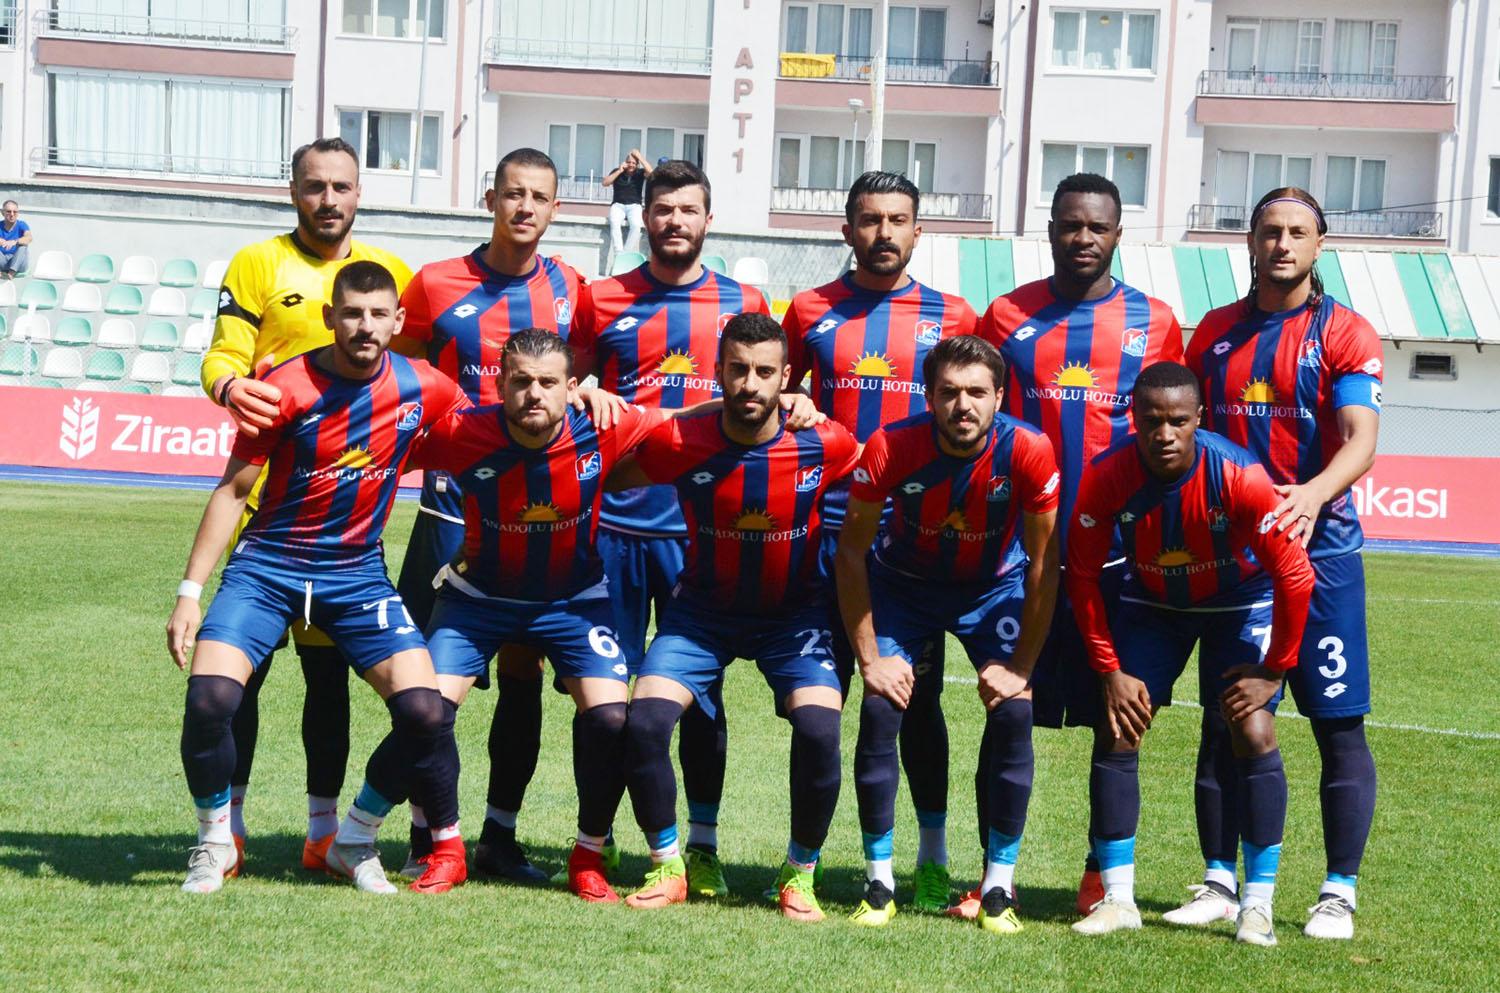 Büyük Anadolu Kırıkkalespor 3 Yeniçağspor 0 - Kırıkkale Haber, Son Dakika Kırıkkale Haberleri